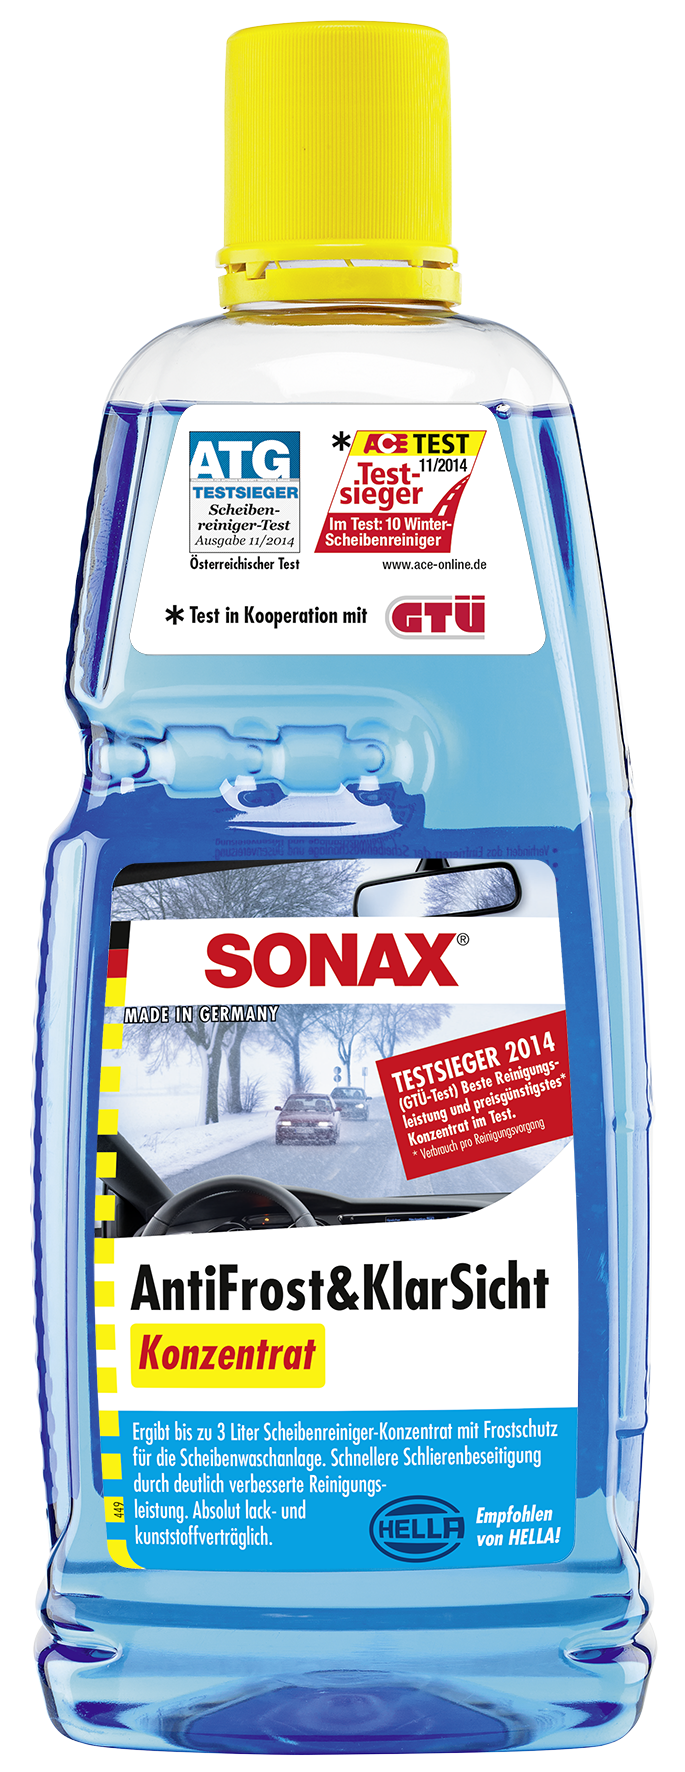 Sonax AntiFrost&KlarSicht Konzentrat 1 L bei ATO24 ❗